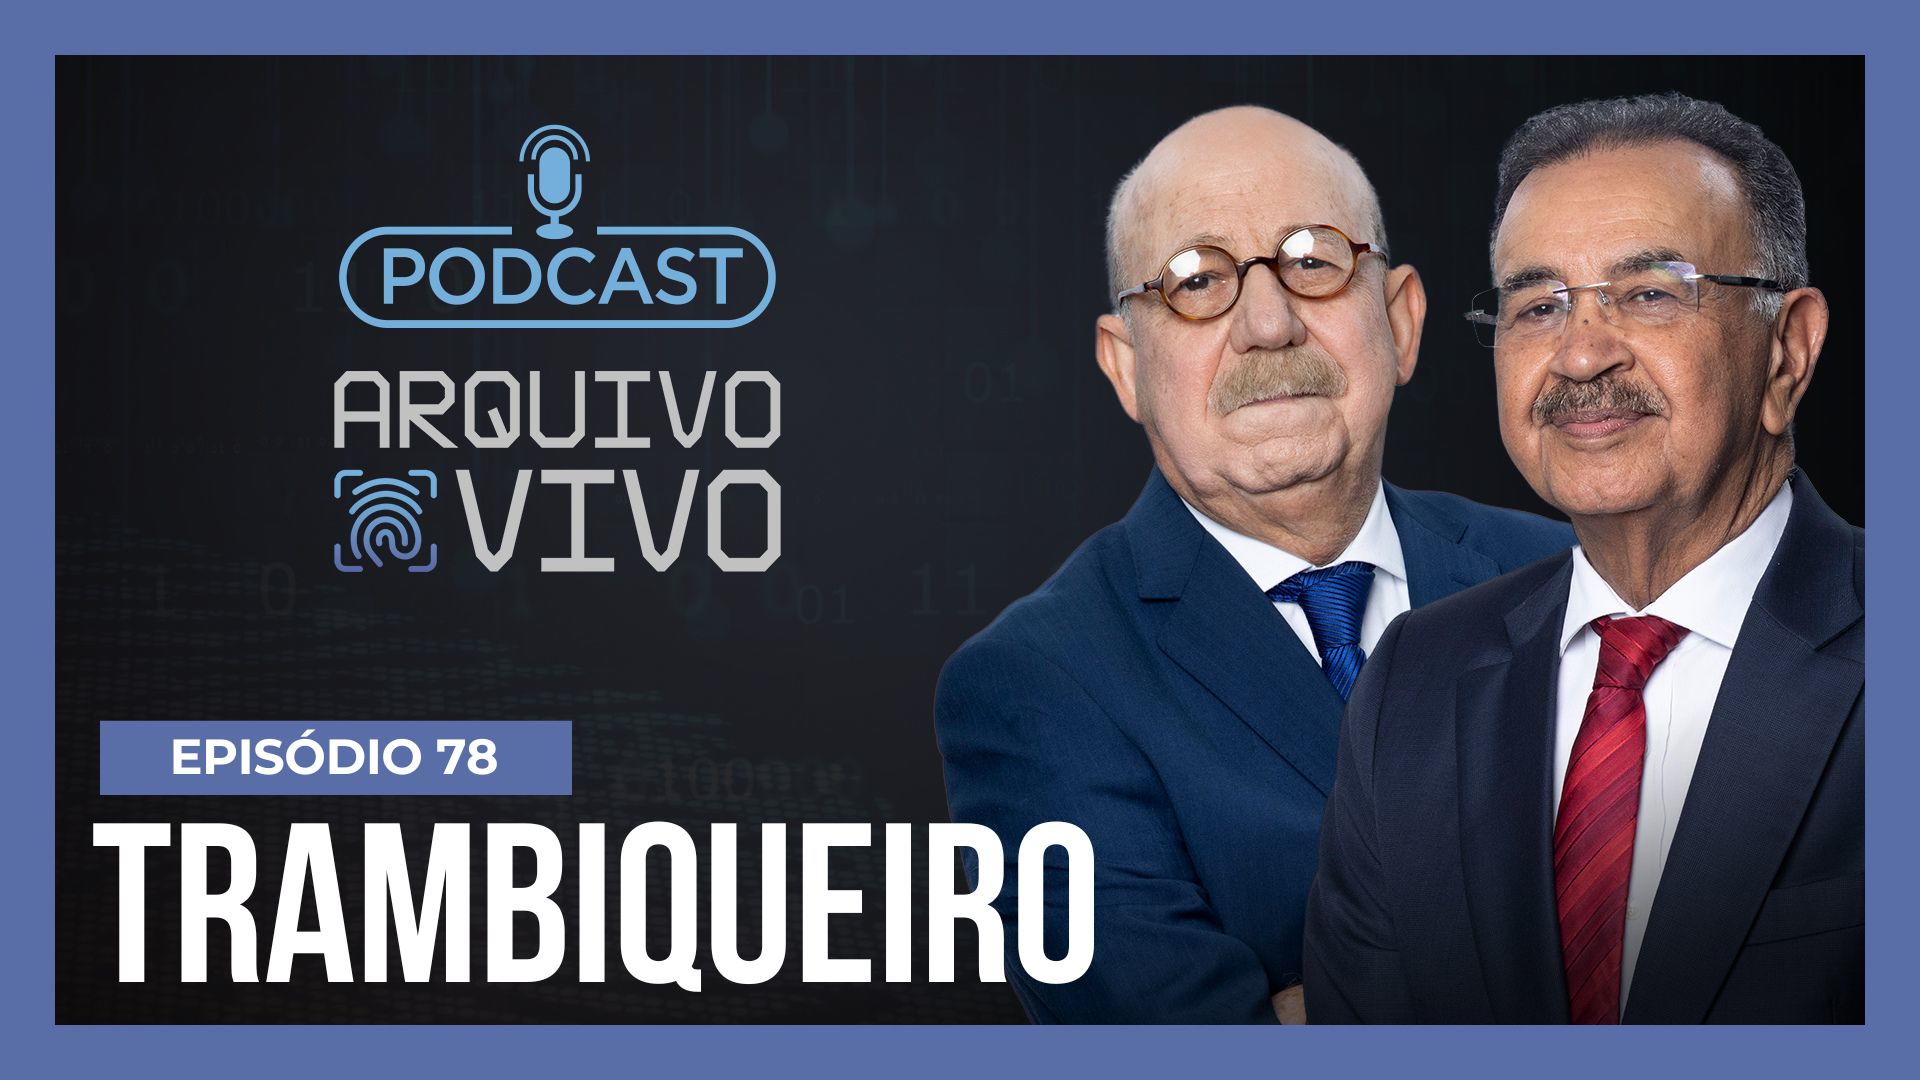 Vídeo: Podcast Arquivo Vivo : A história do maior trambiqueiro do Brasil | Ep. 78